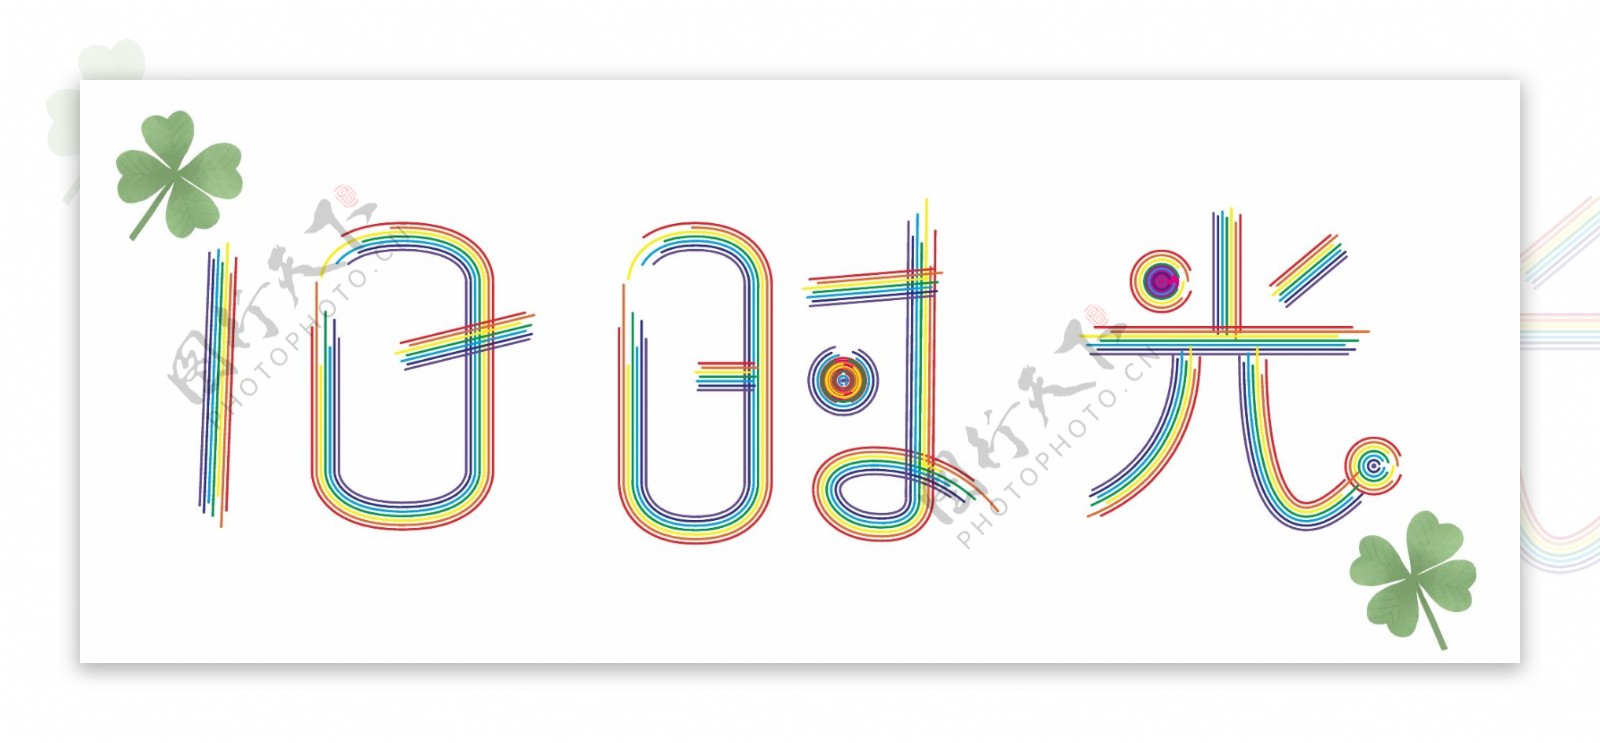 旧时光彩虹字体设计